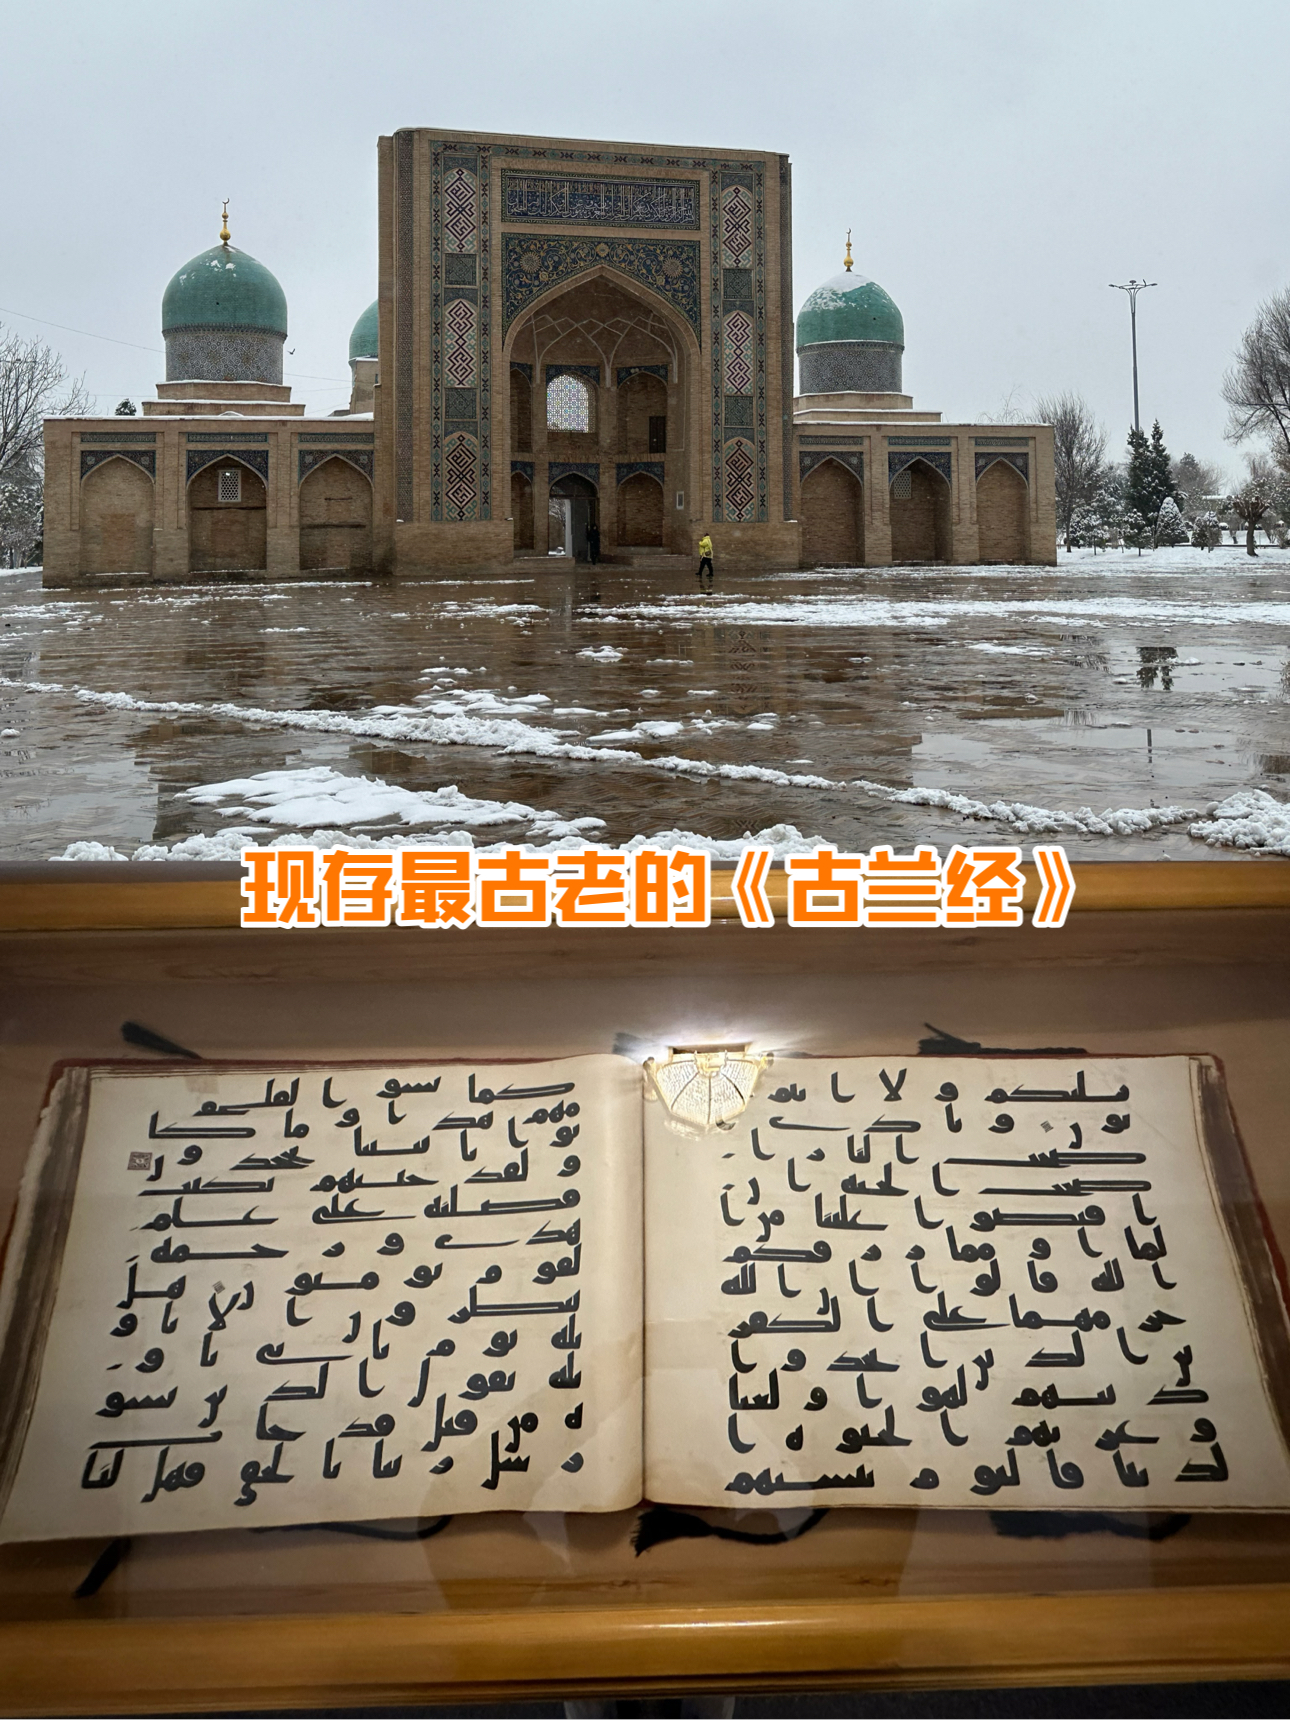 来看看可能是世界上最古老的《古兰经》